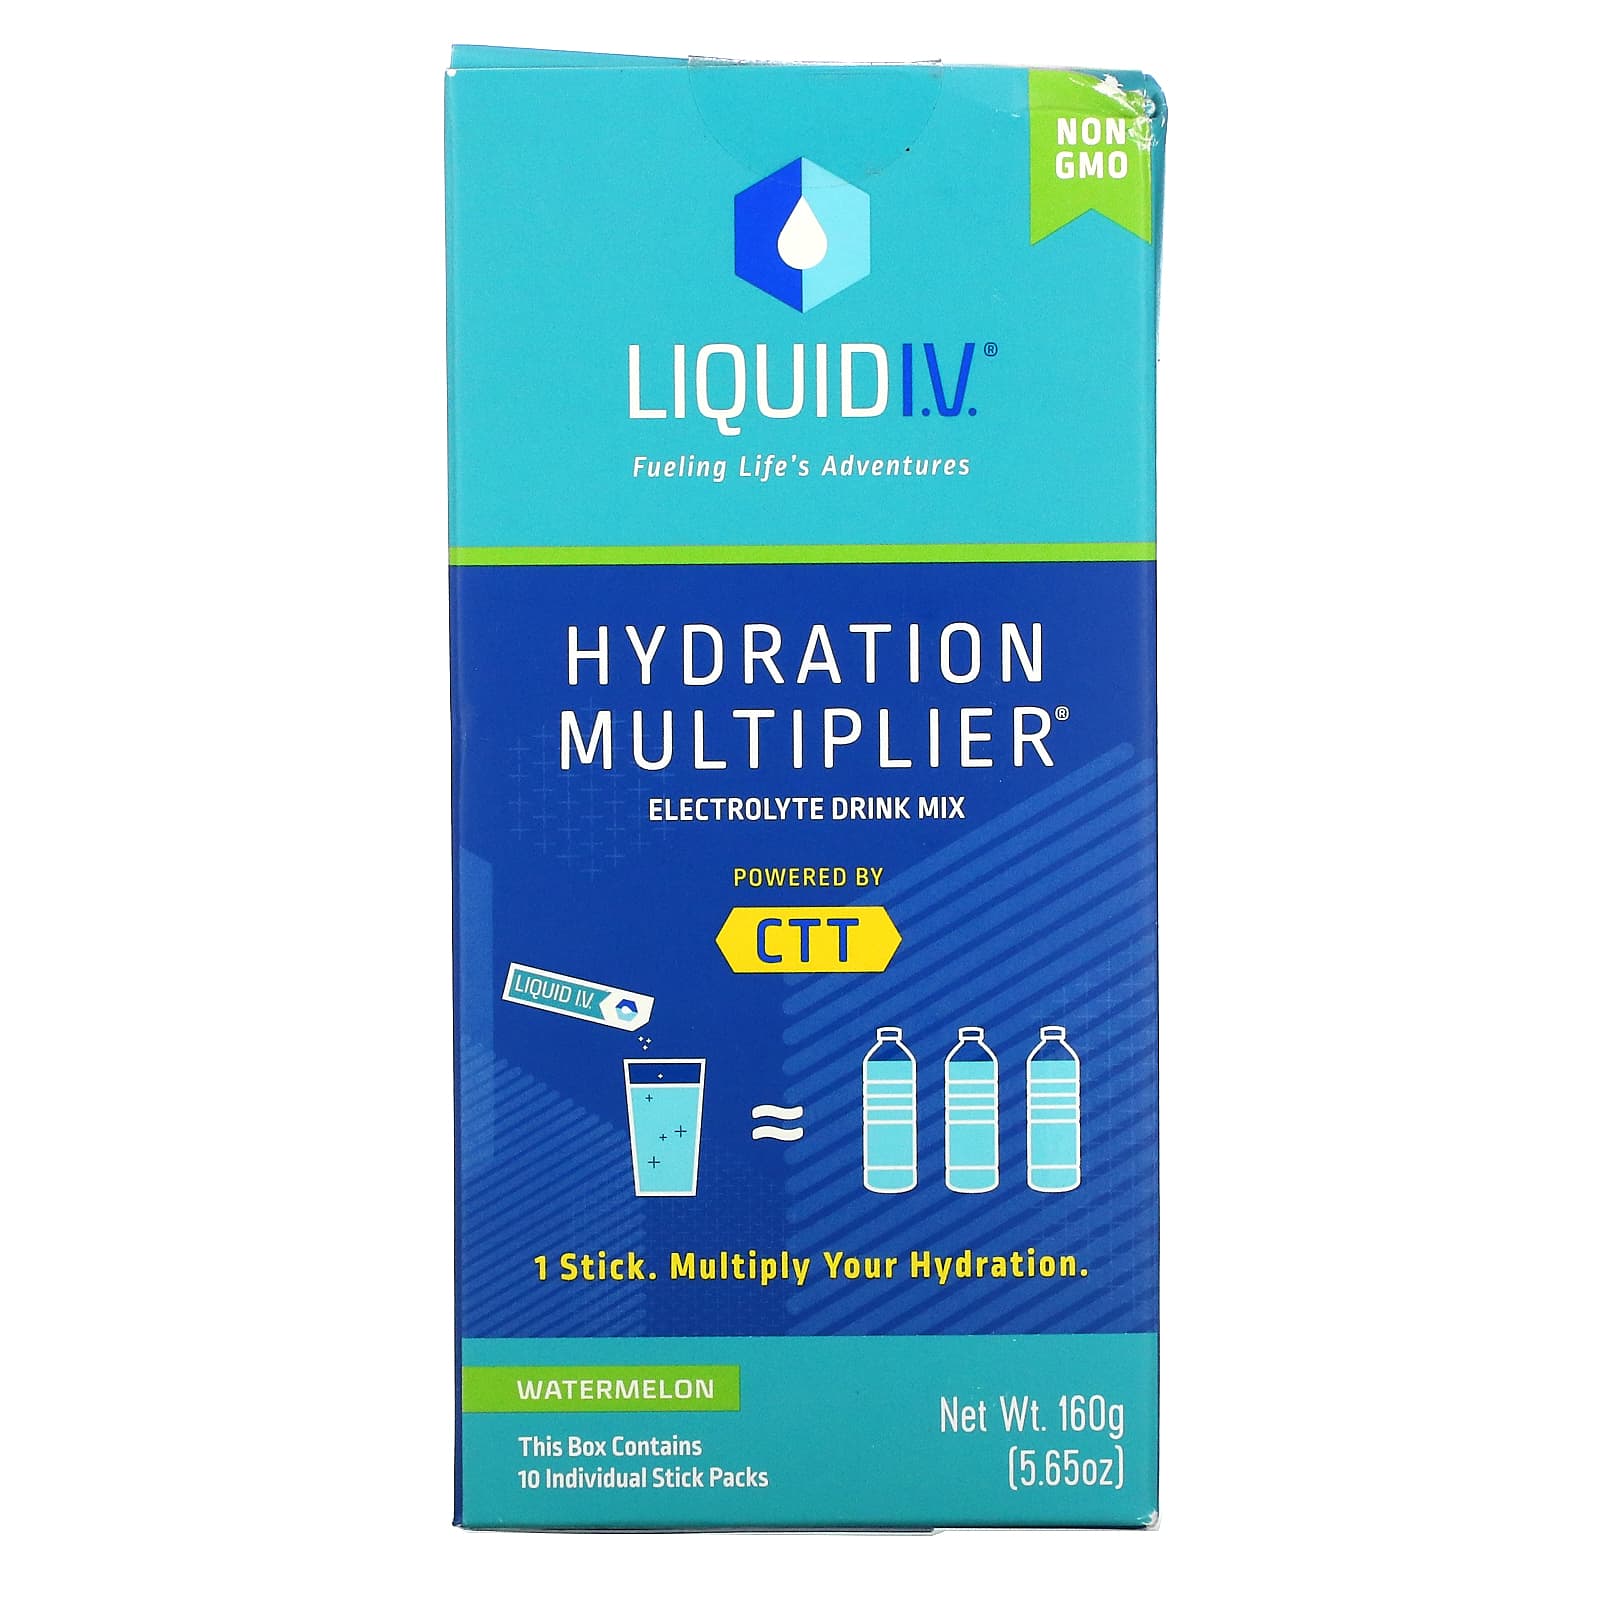 Смесь Liquid I.V. для приготовления напитков с электролитом, арбуз, 10 отдельных пакетиков по 16 г смесь для напитков liquid i v hydration multiplier с электролитами арбуз 10 индивидуальных стиков по 16 г